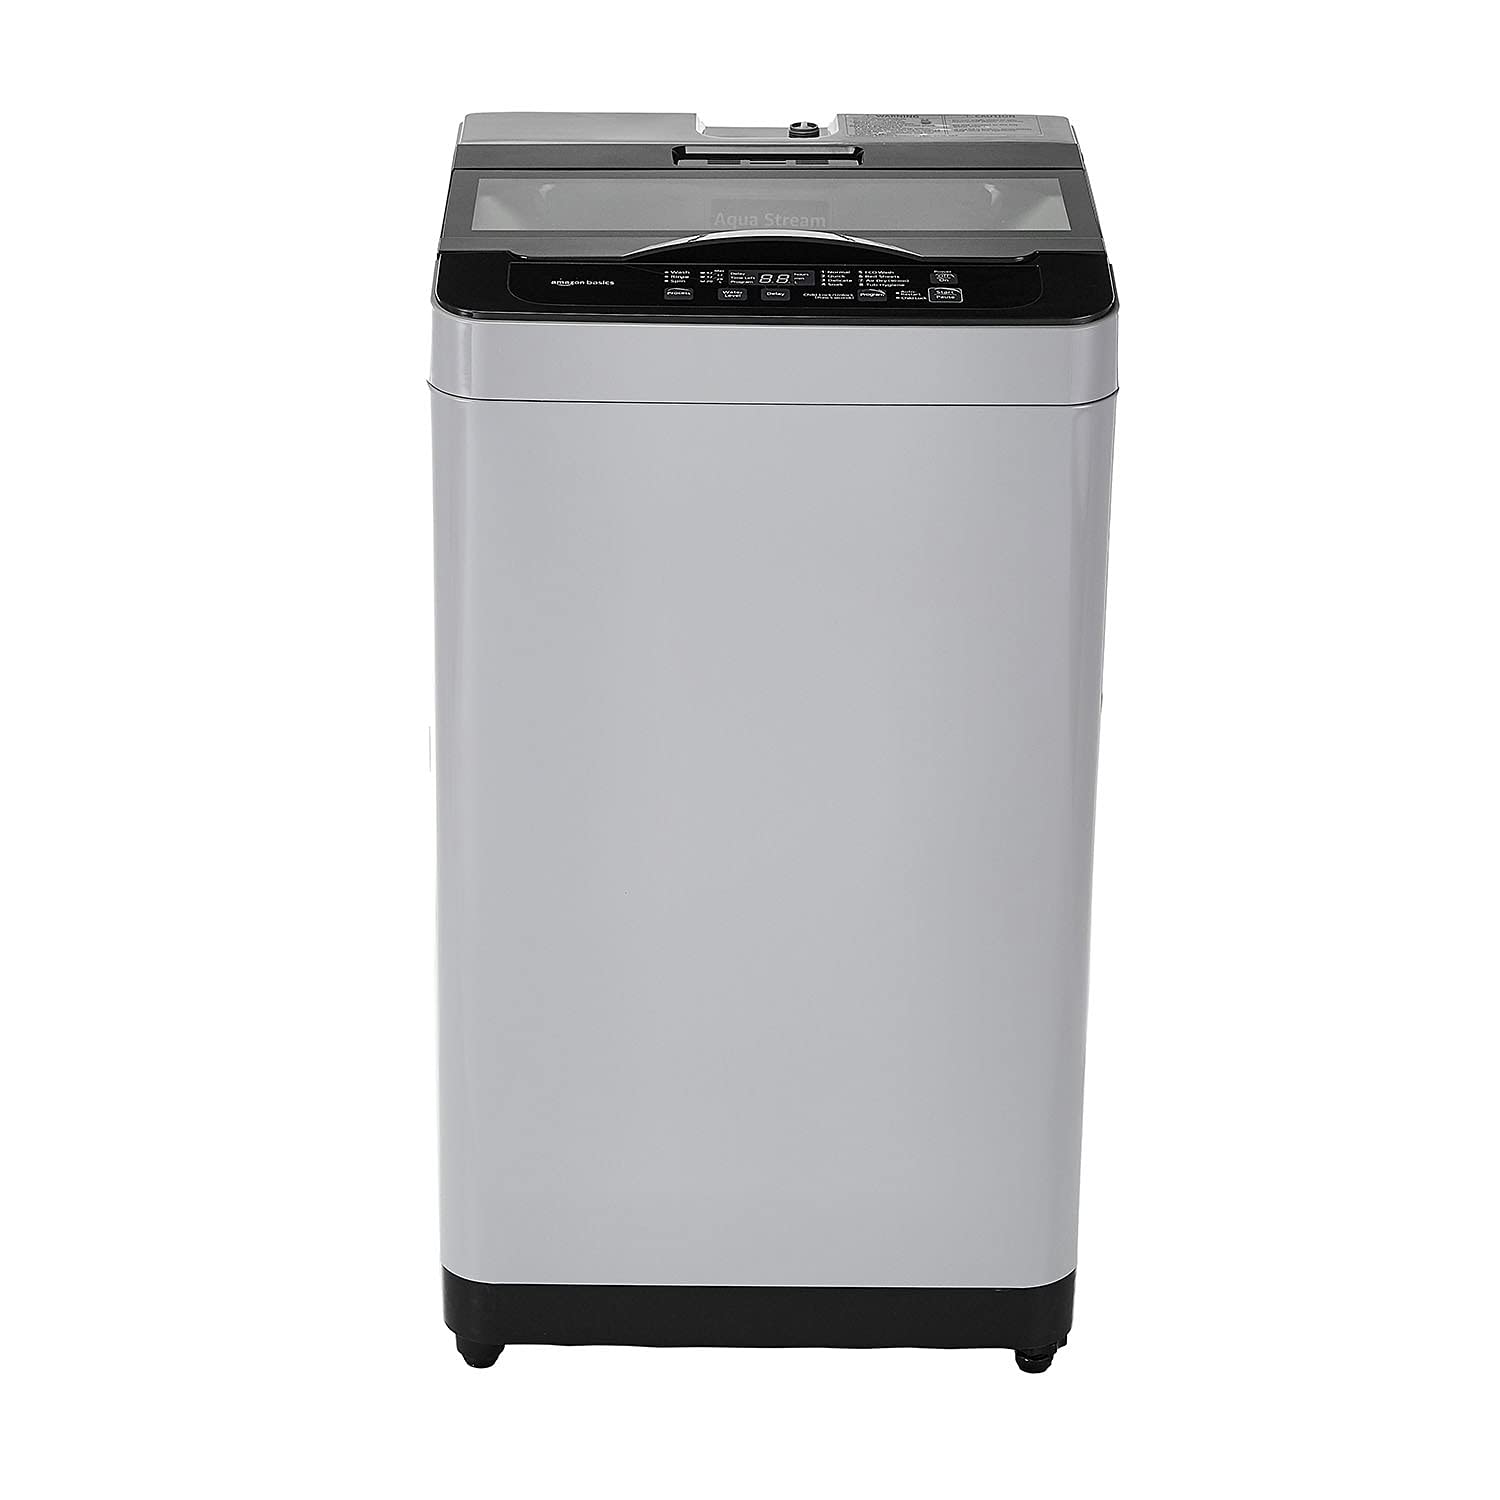 Open Box, Unused Amazon Basics 8 Kg Fully Automatic Top Loading Washing Machine